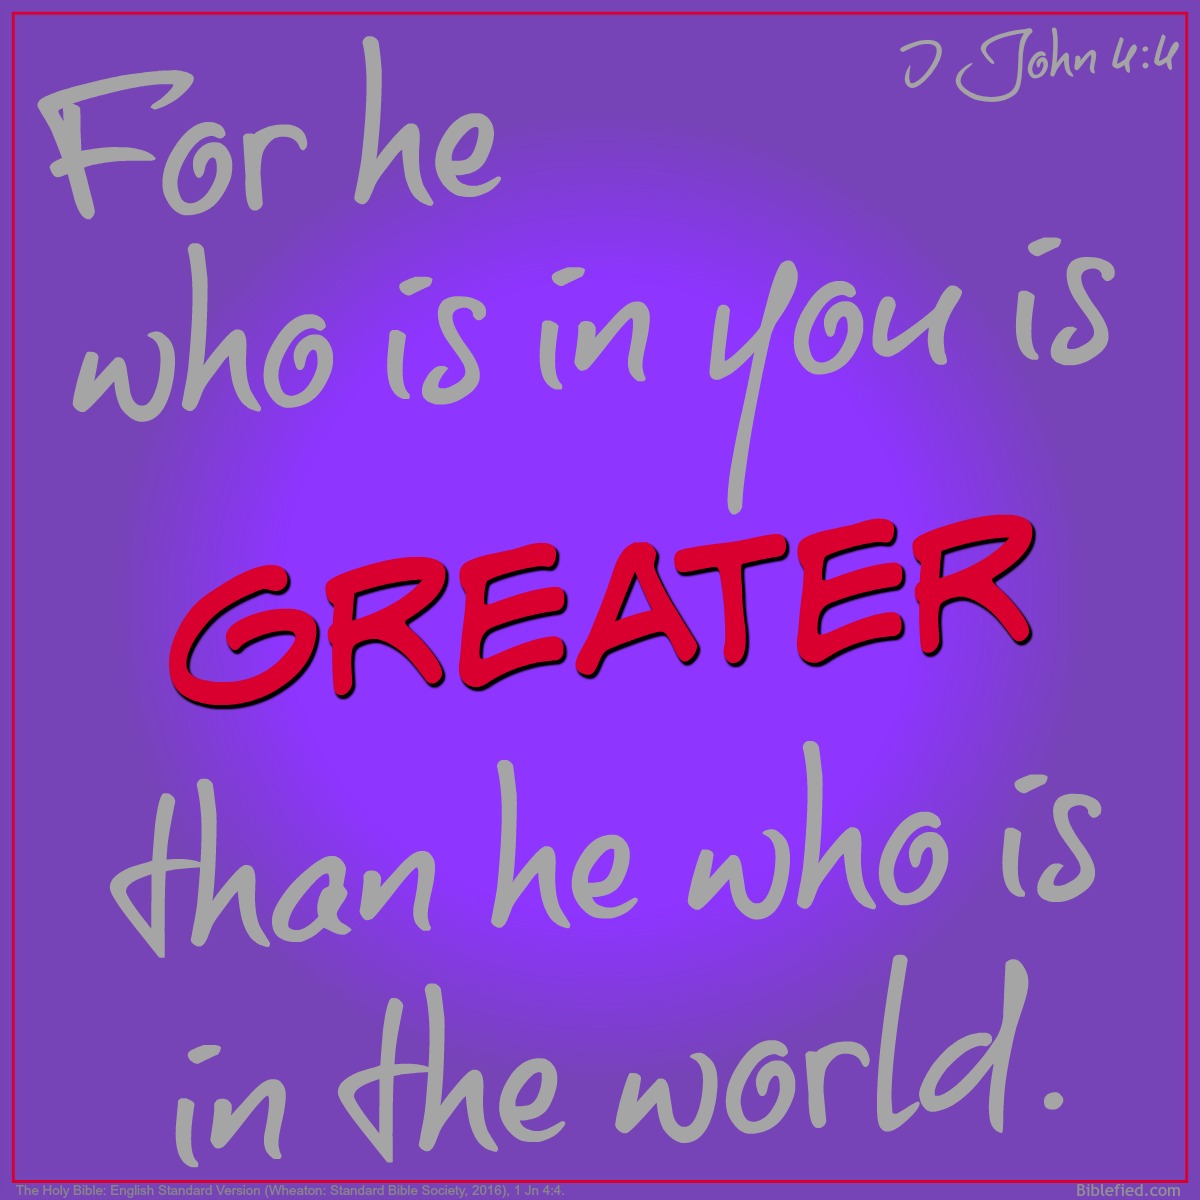 I John 4:4